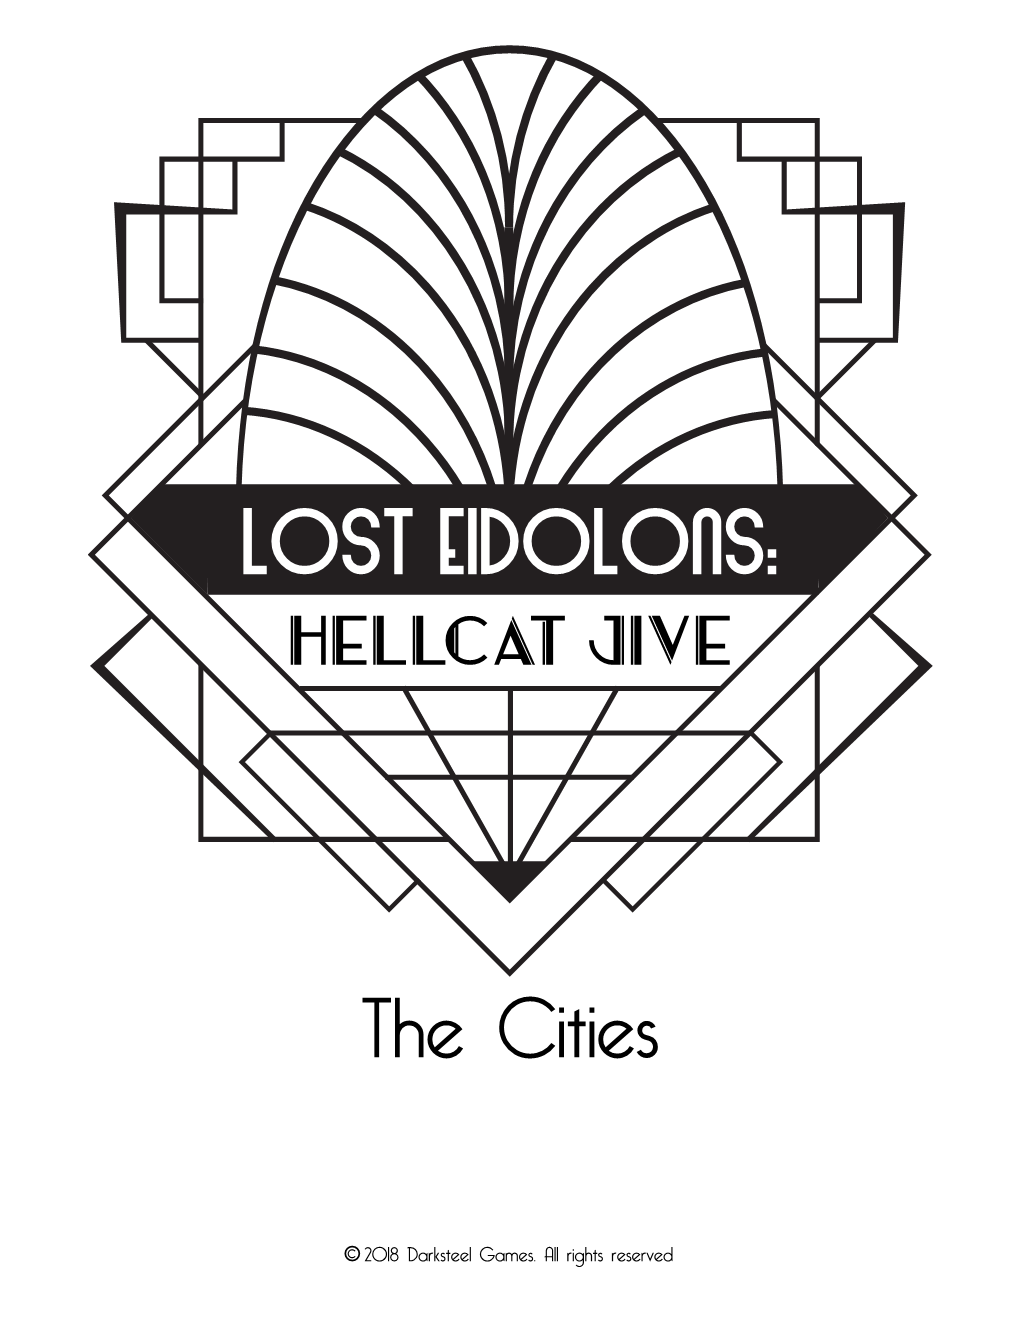 Lost Eidolons: Hellcat Jive